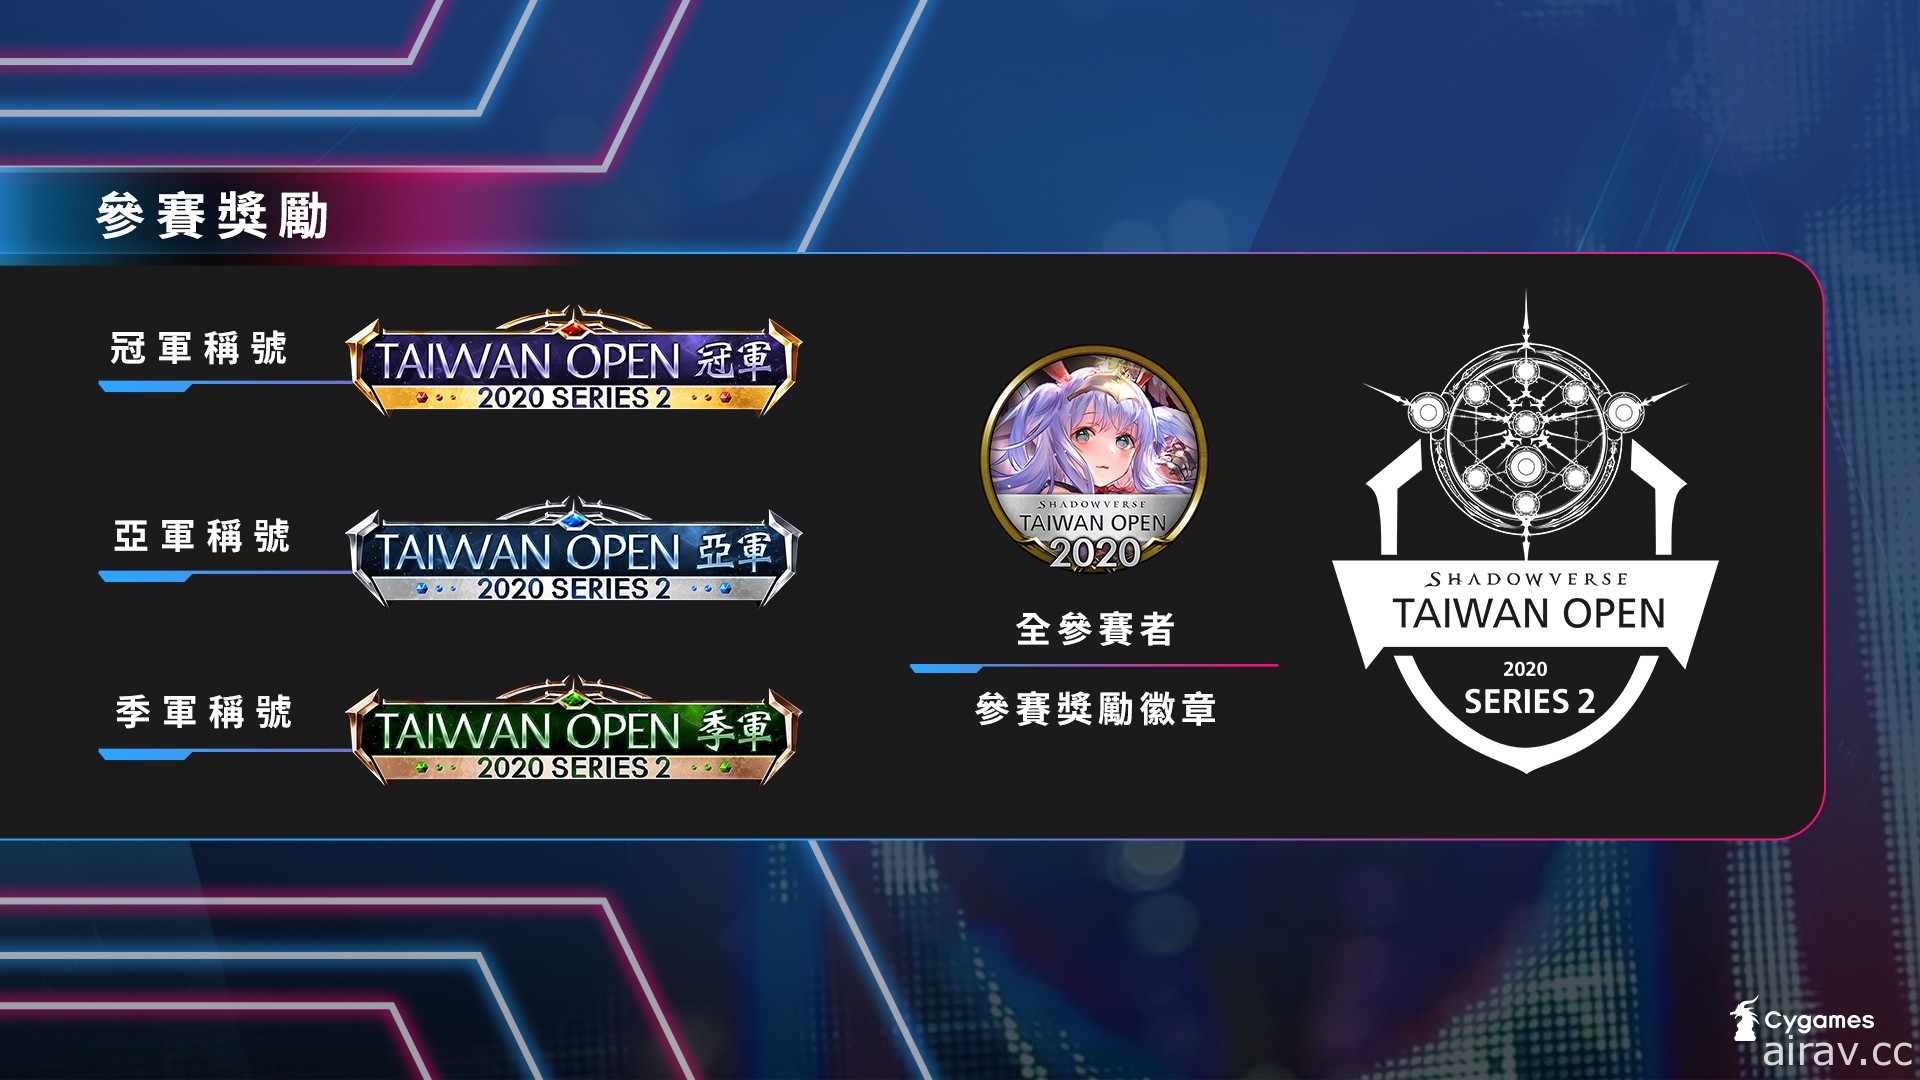 《闇影诗章》台湾官方赛事“Shadowverse Taiwan Open 2020 Series2”开放报名